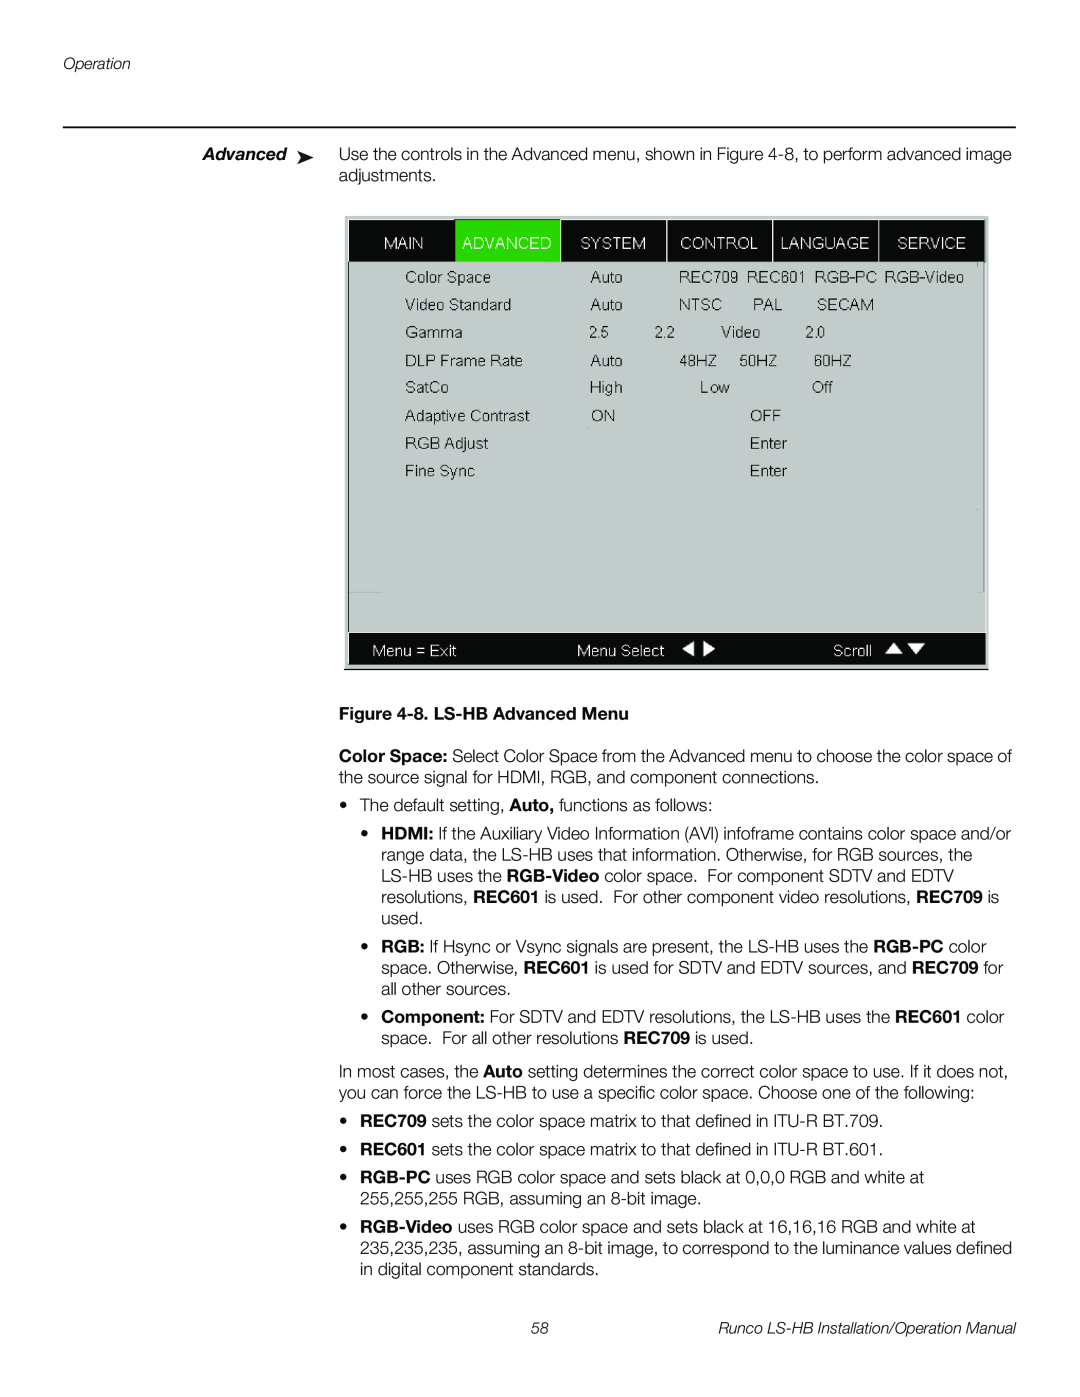 Runco operation manual 8. LS-HB Advanced Menu 